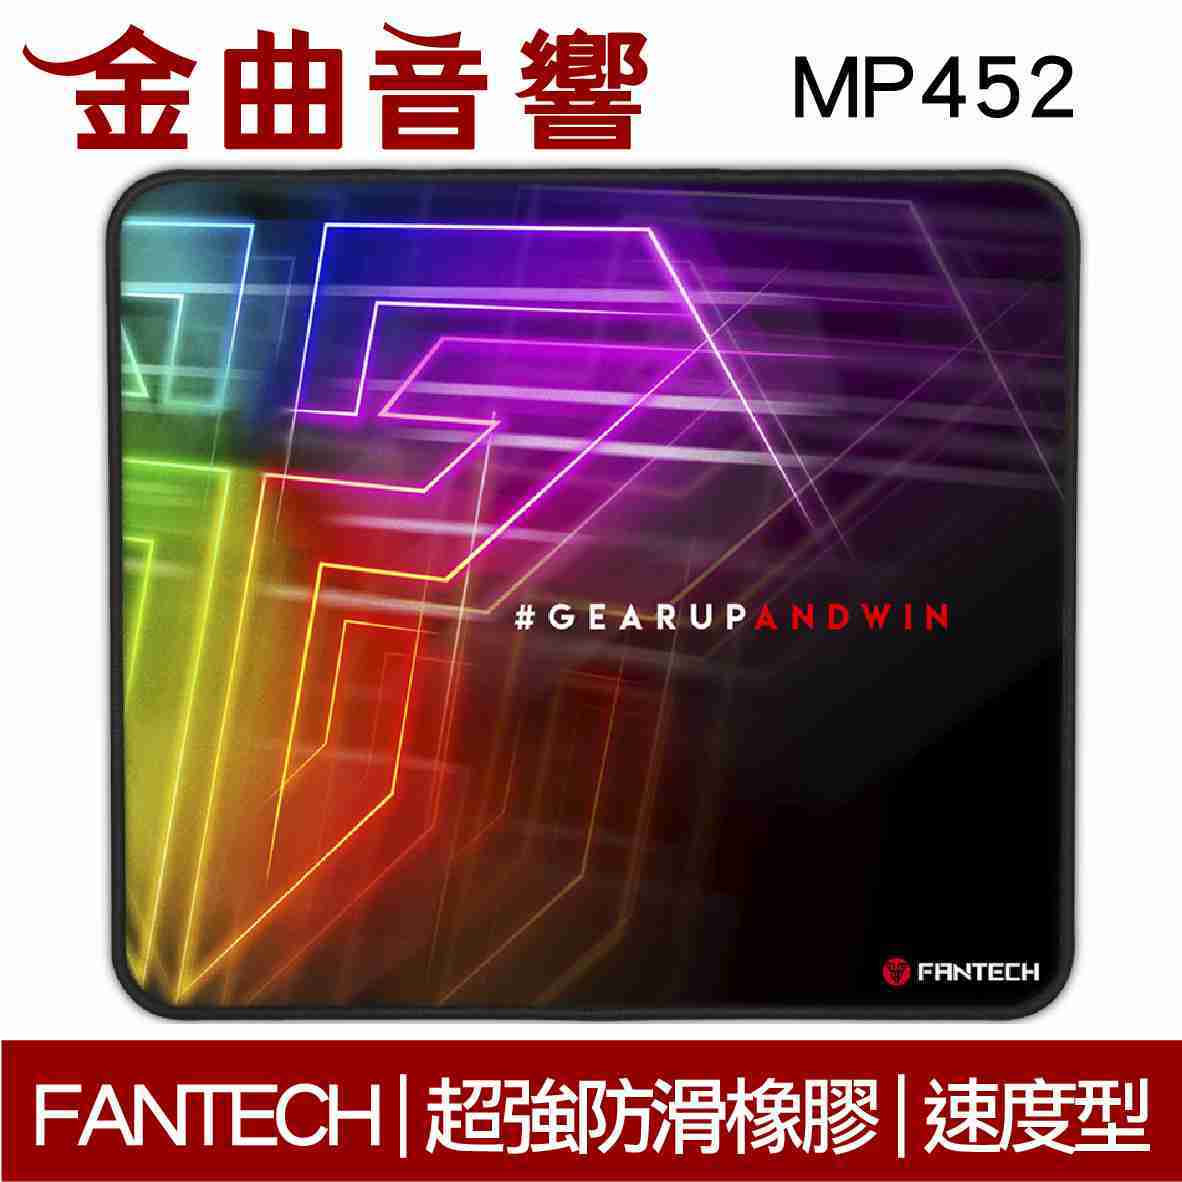 FANTECH MP452 速度型 精密防滑 電競 滑鼠墊 | 金曲音響